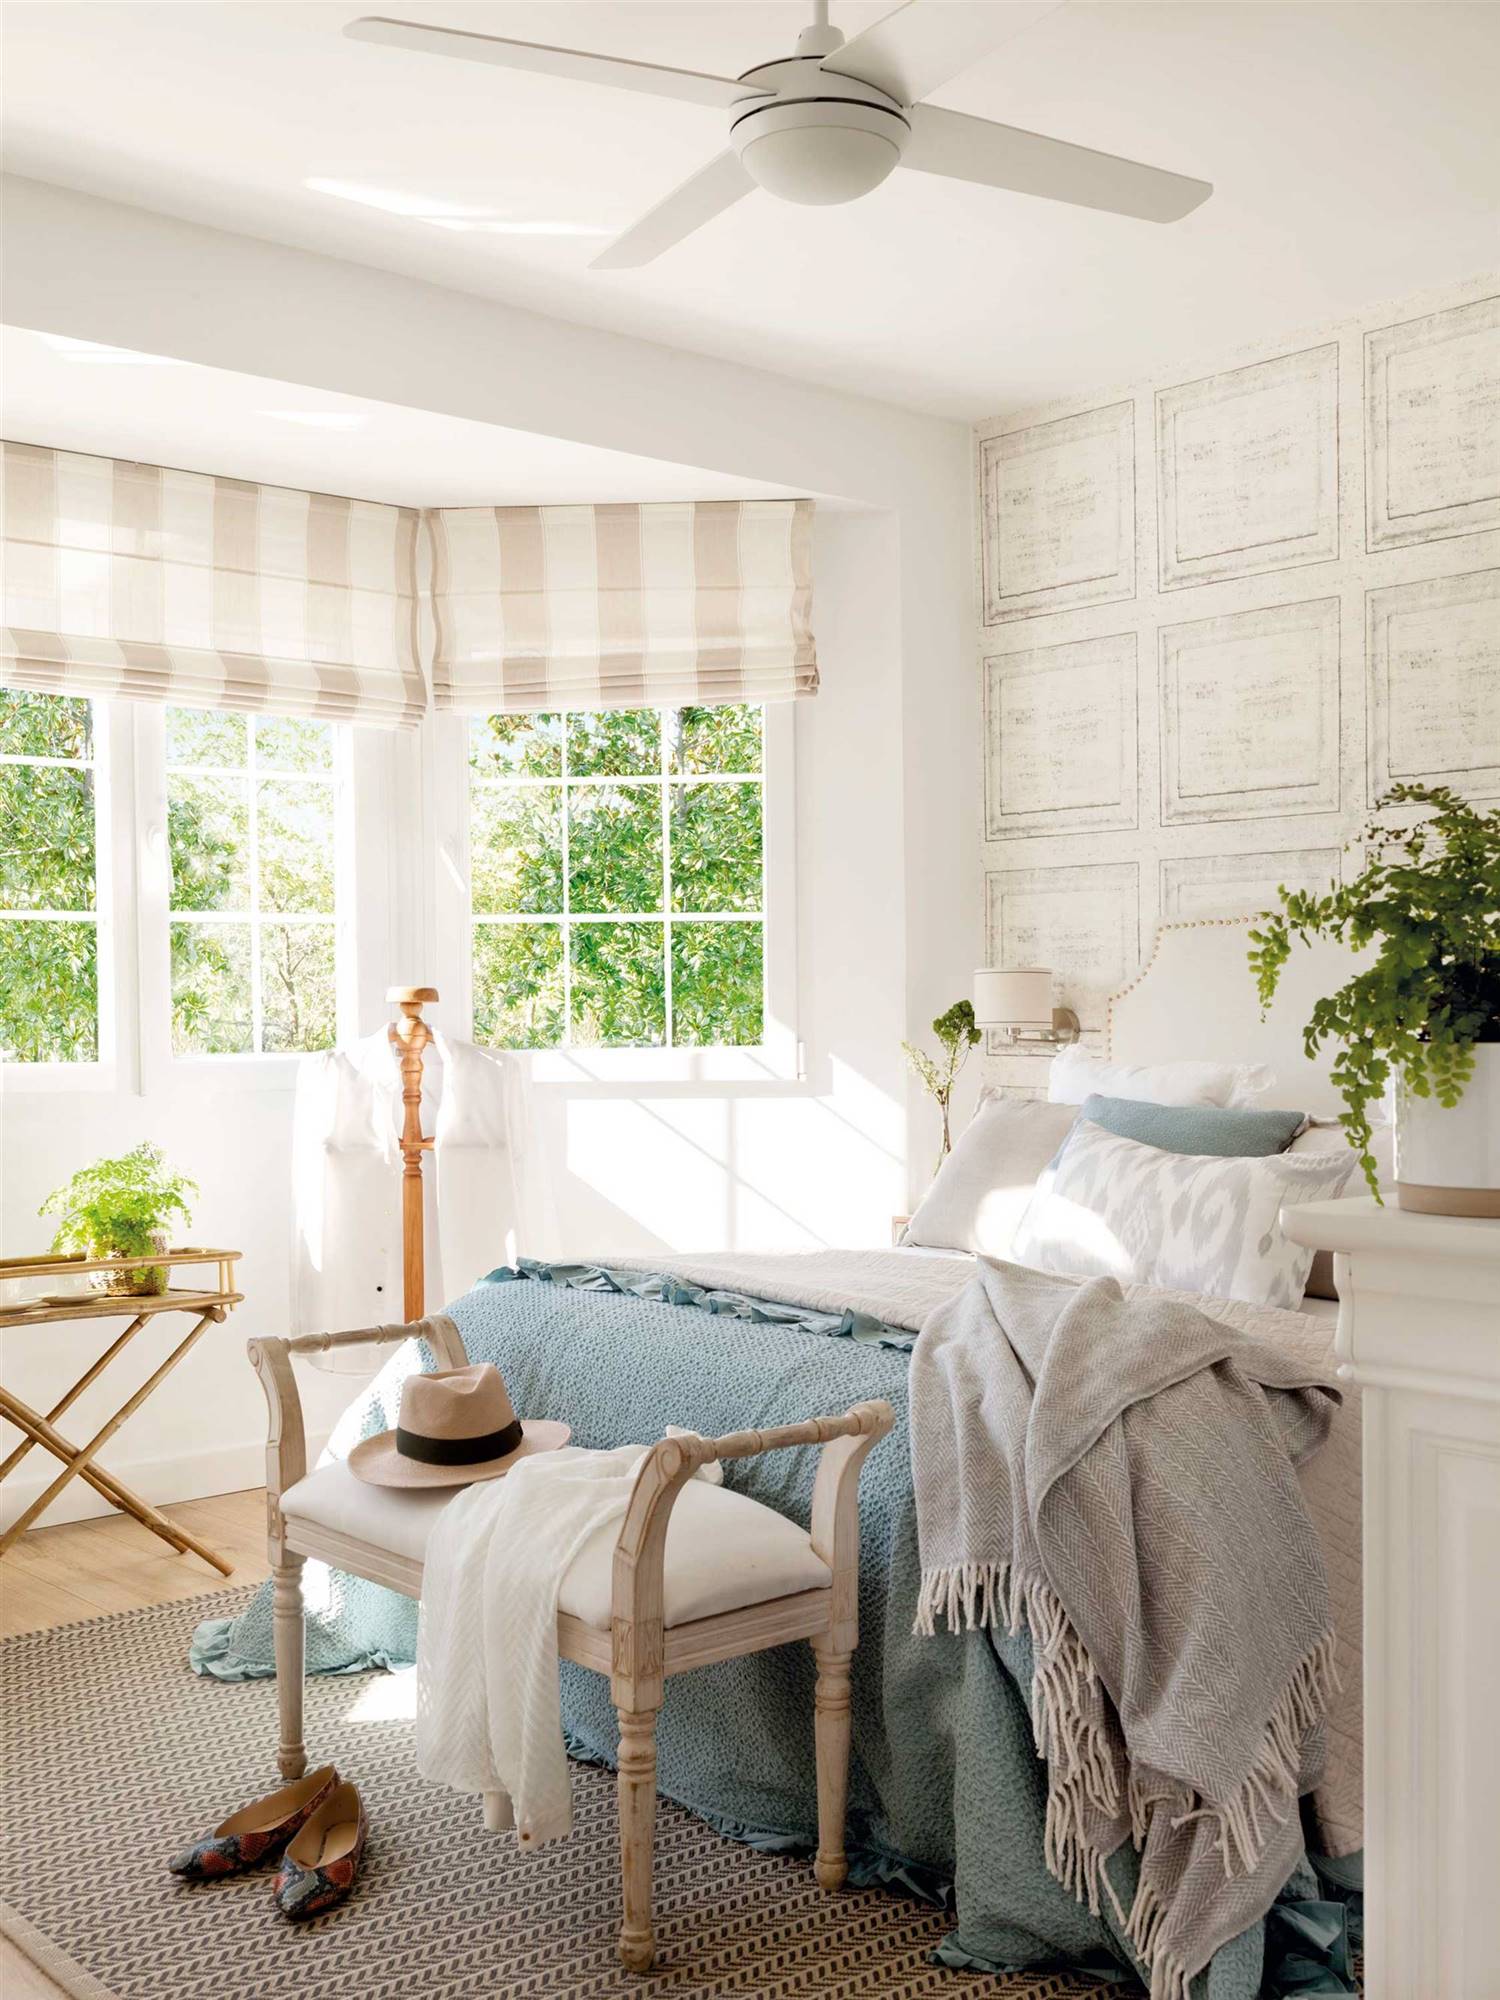 Dormitorio clásico con cabecero tapizado y papel pintado.  